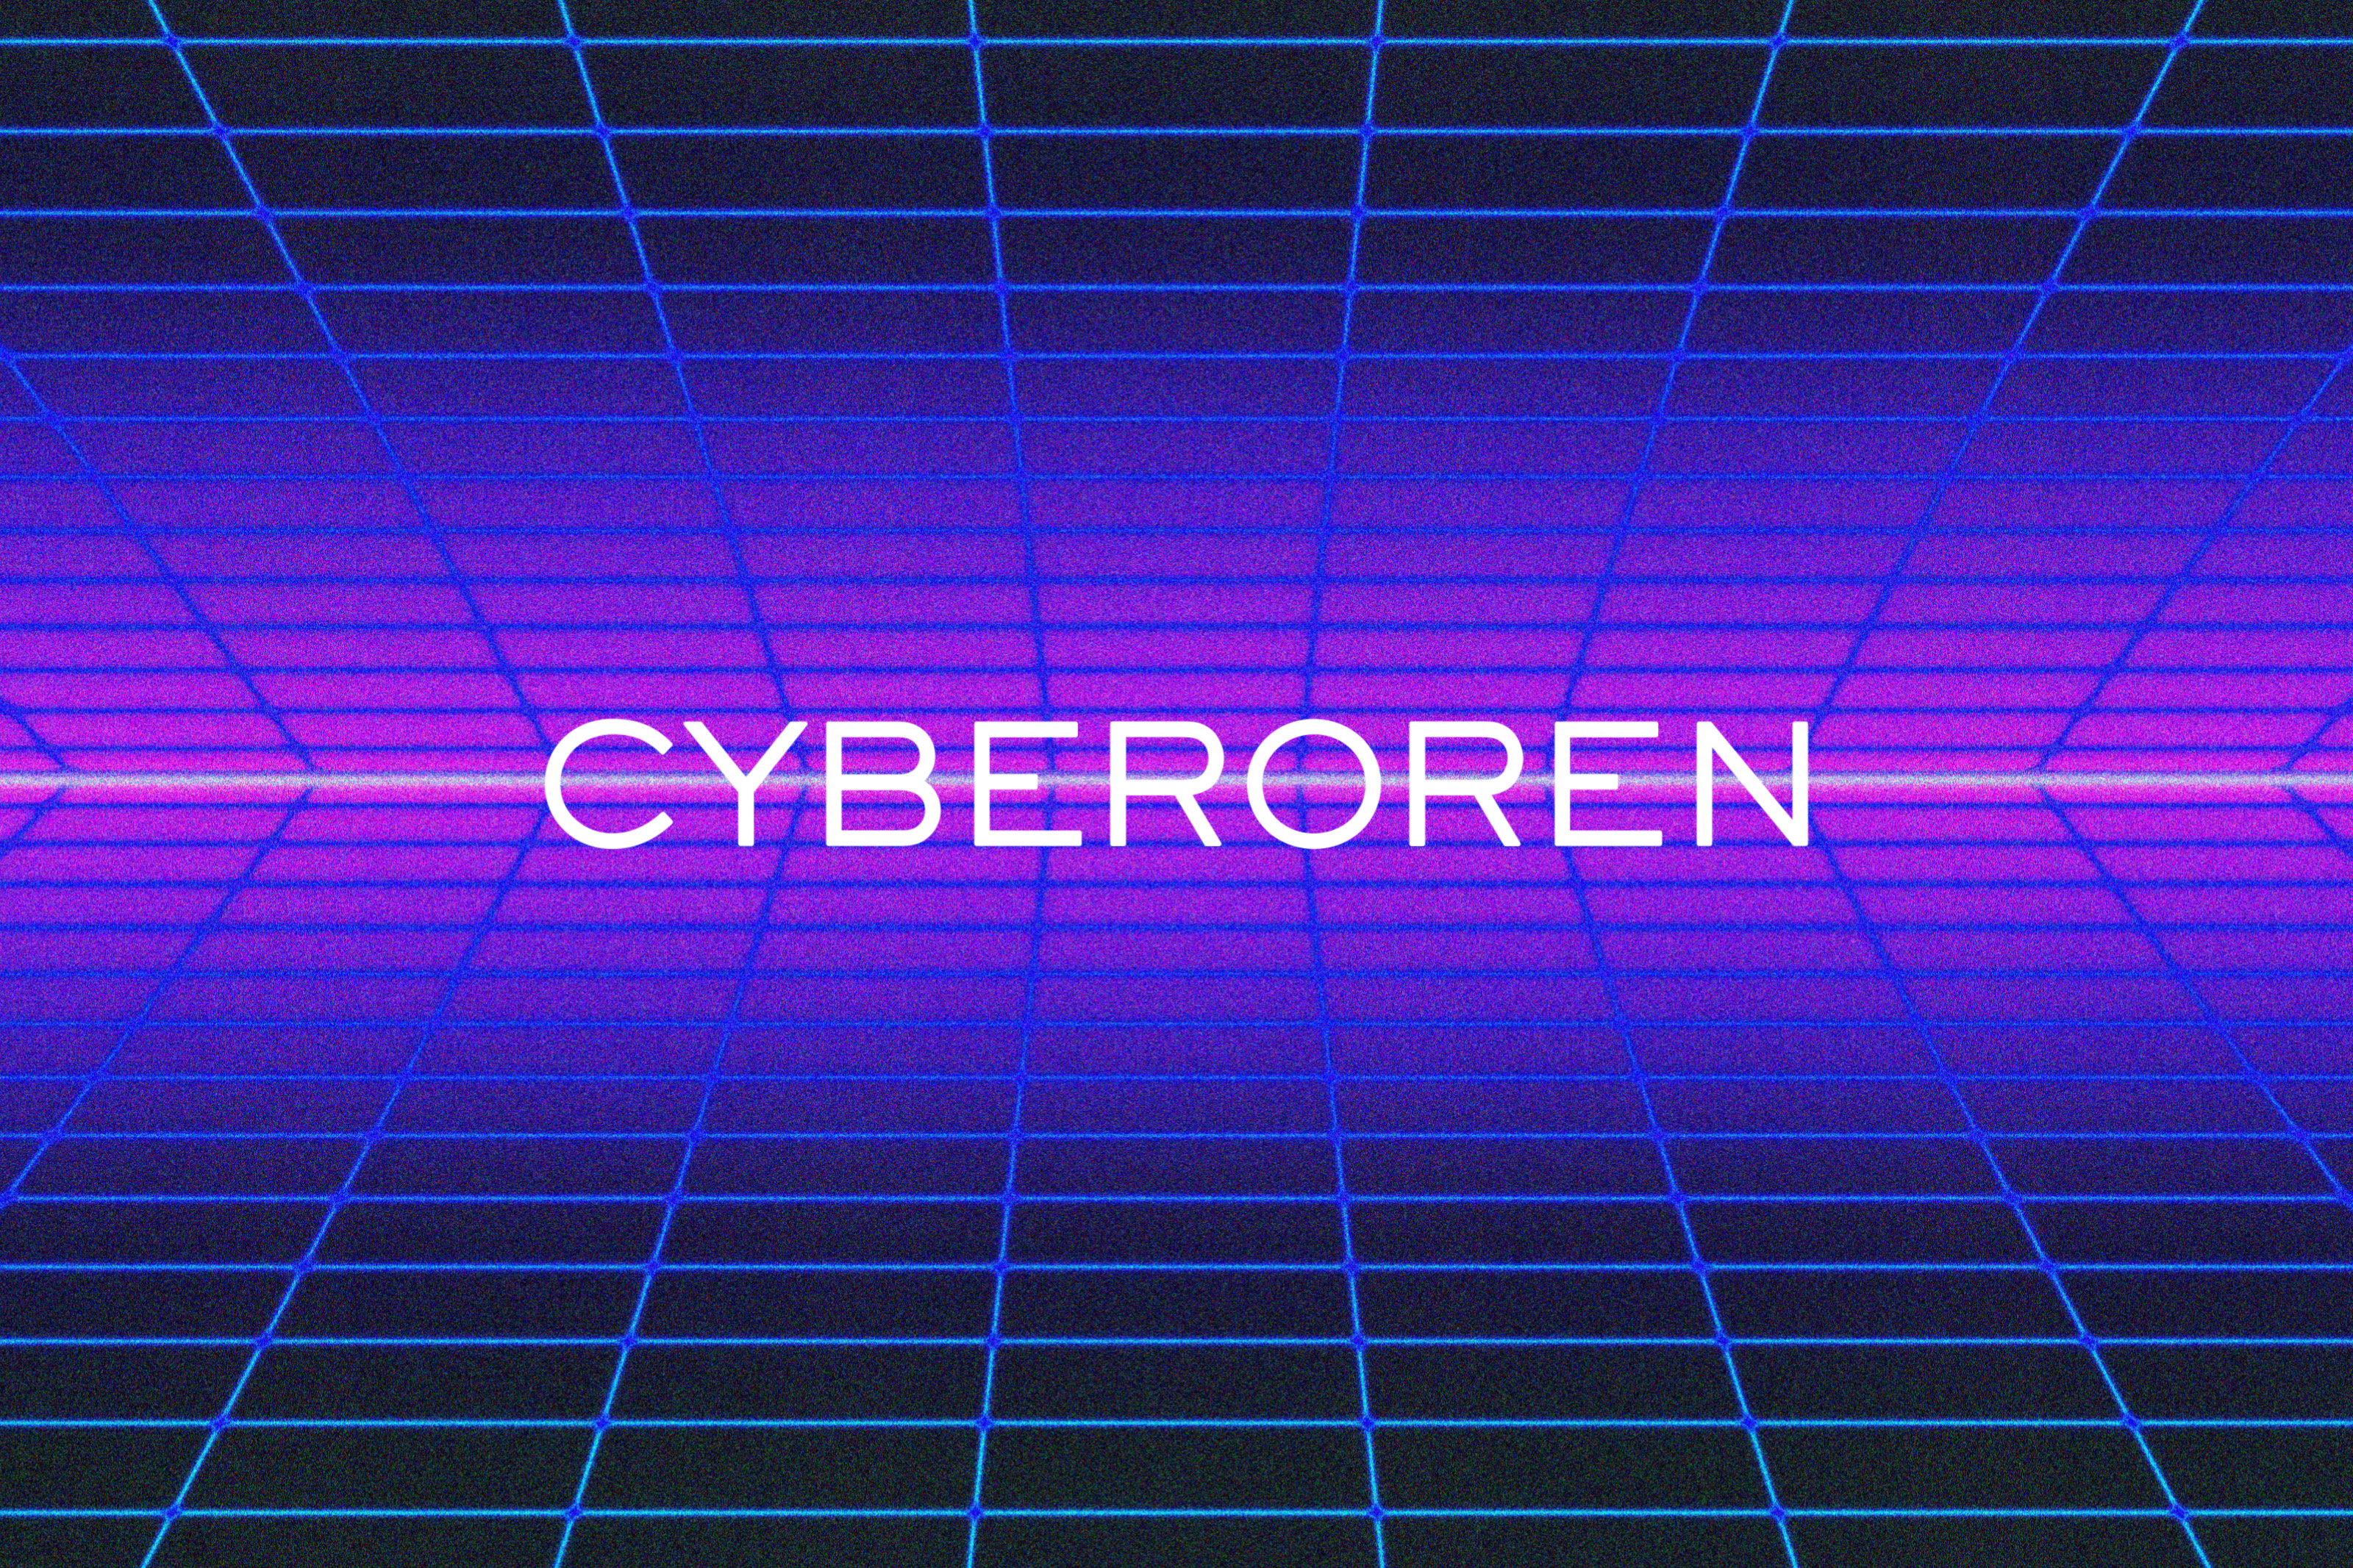 CYBEROREN / Setup